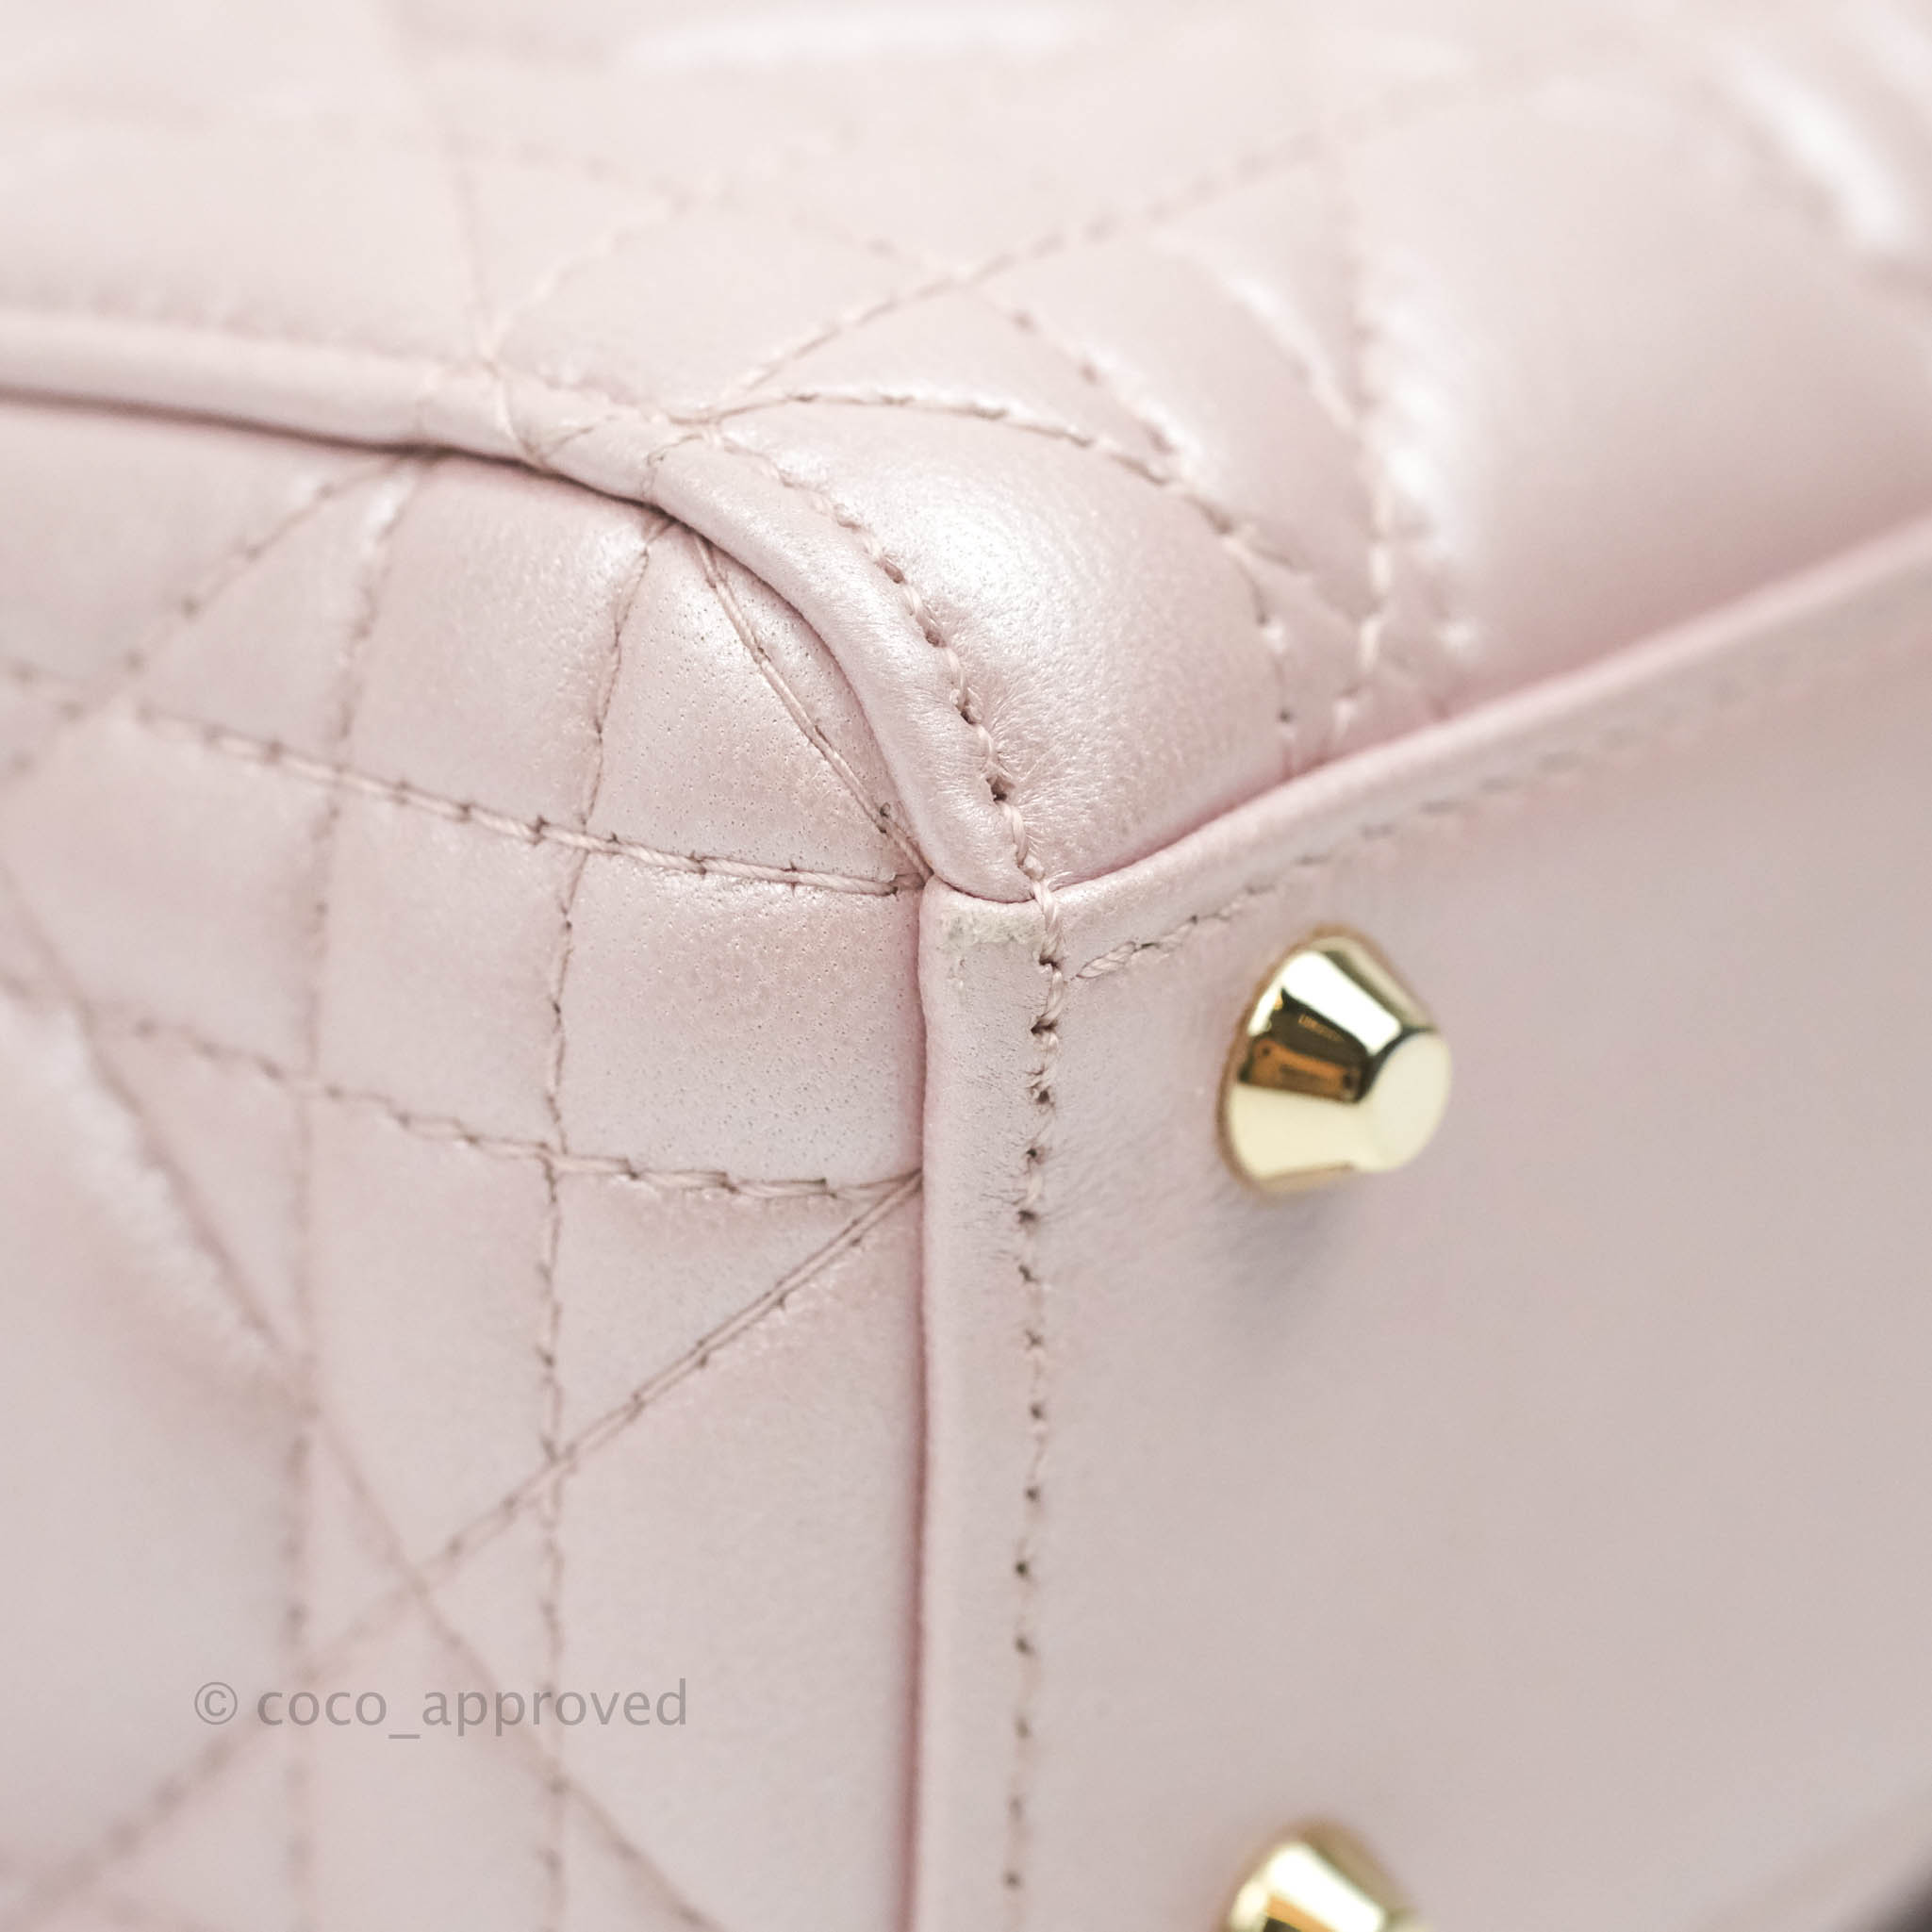 Dior - Miss Dior Mini Bag Light Pink Cannage Lambskin - Women